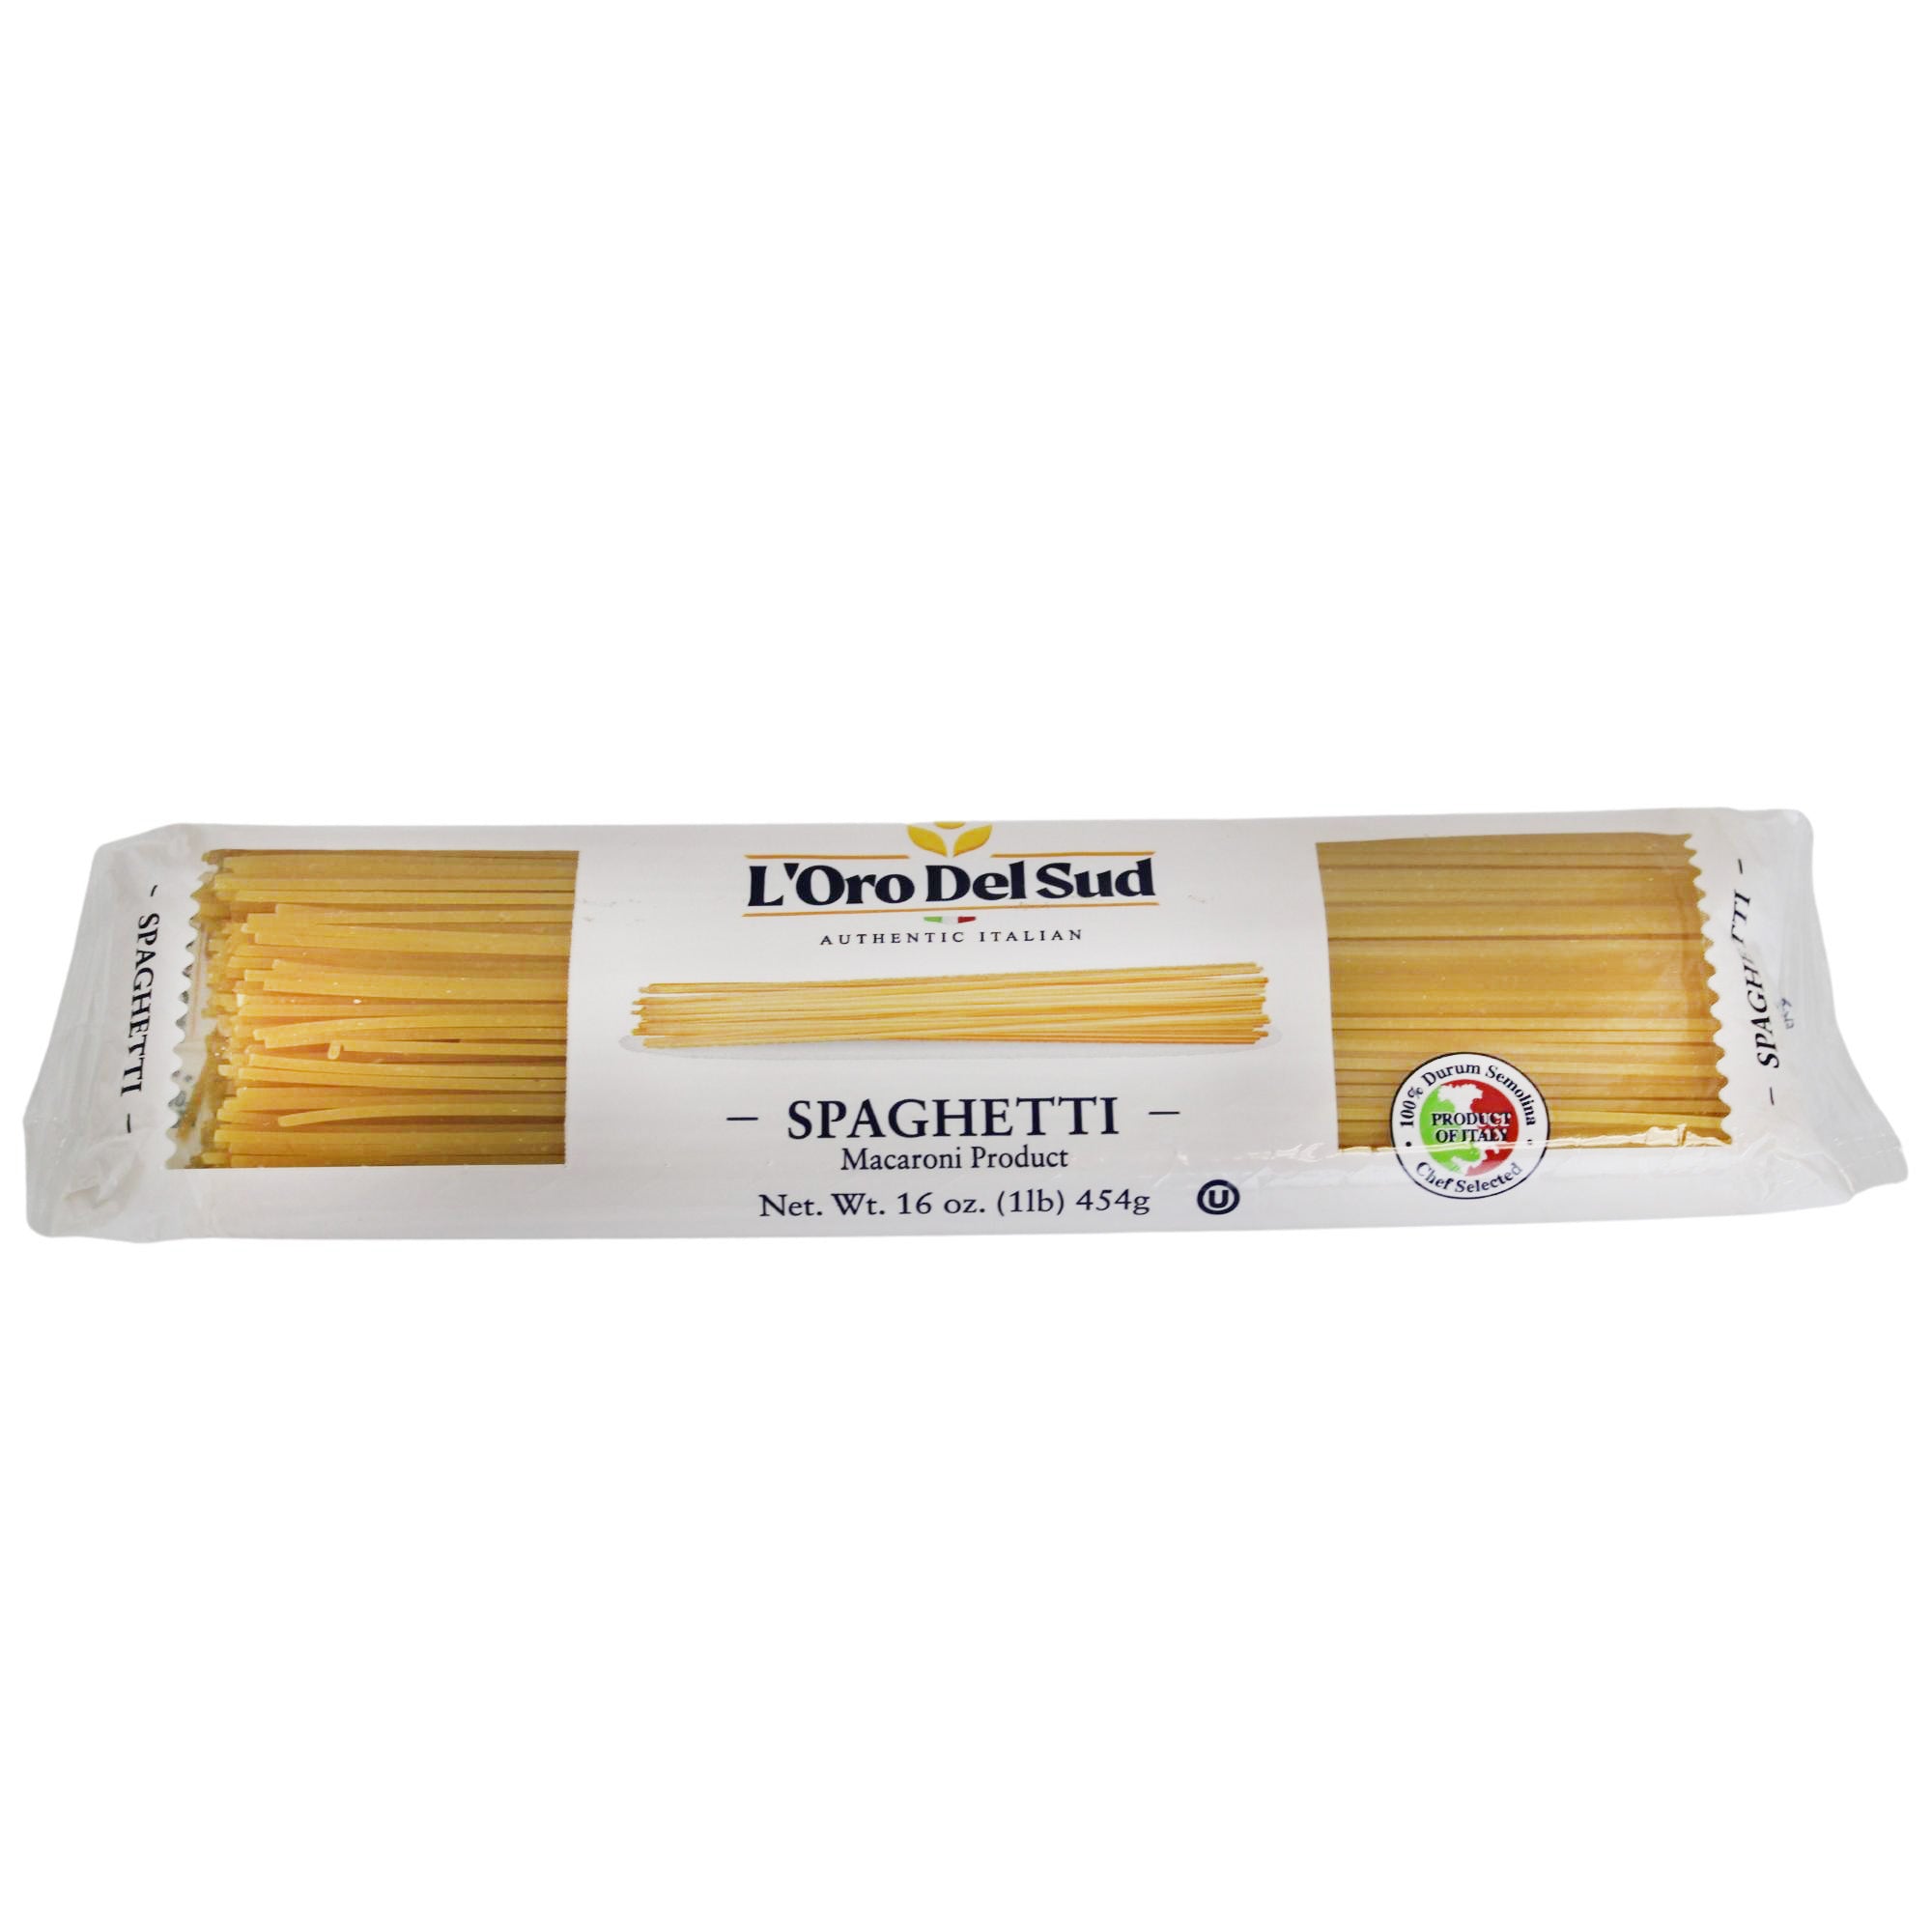 L'Oro Del Sud Spaghettis Pasta 1 lb. Bag